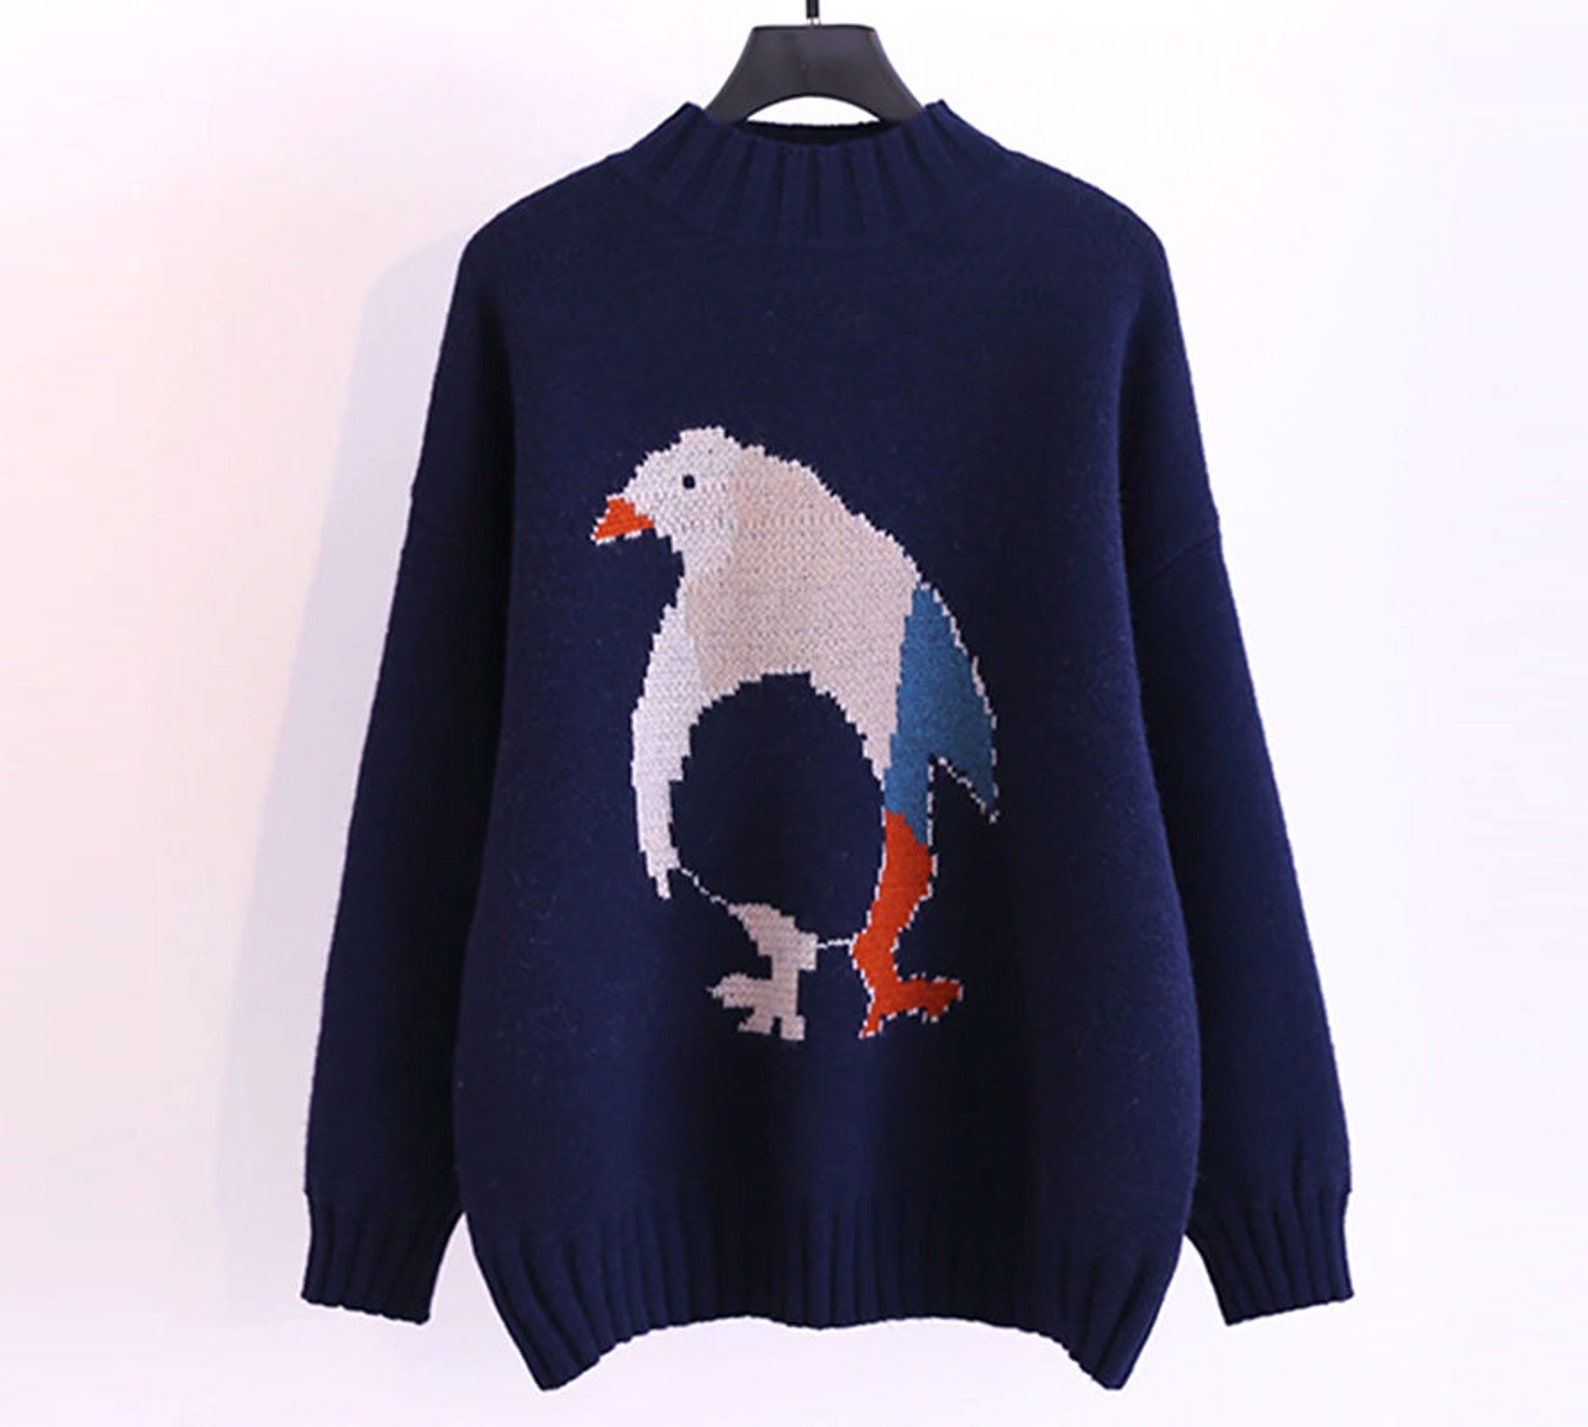 Penguin Animal Knit Sweater Jumper Pullover | Etsy